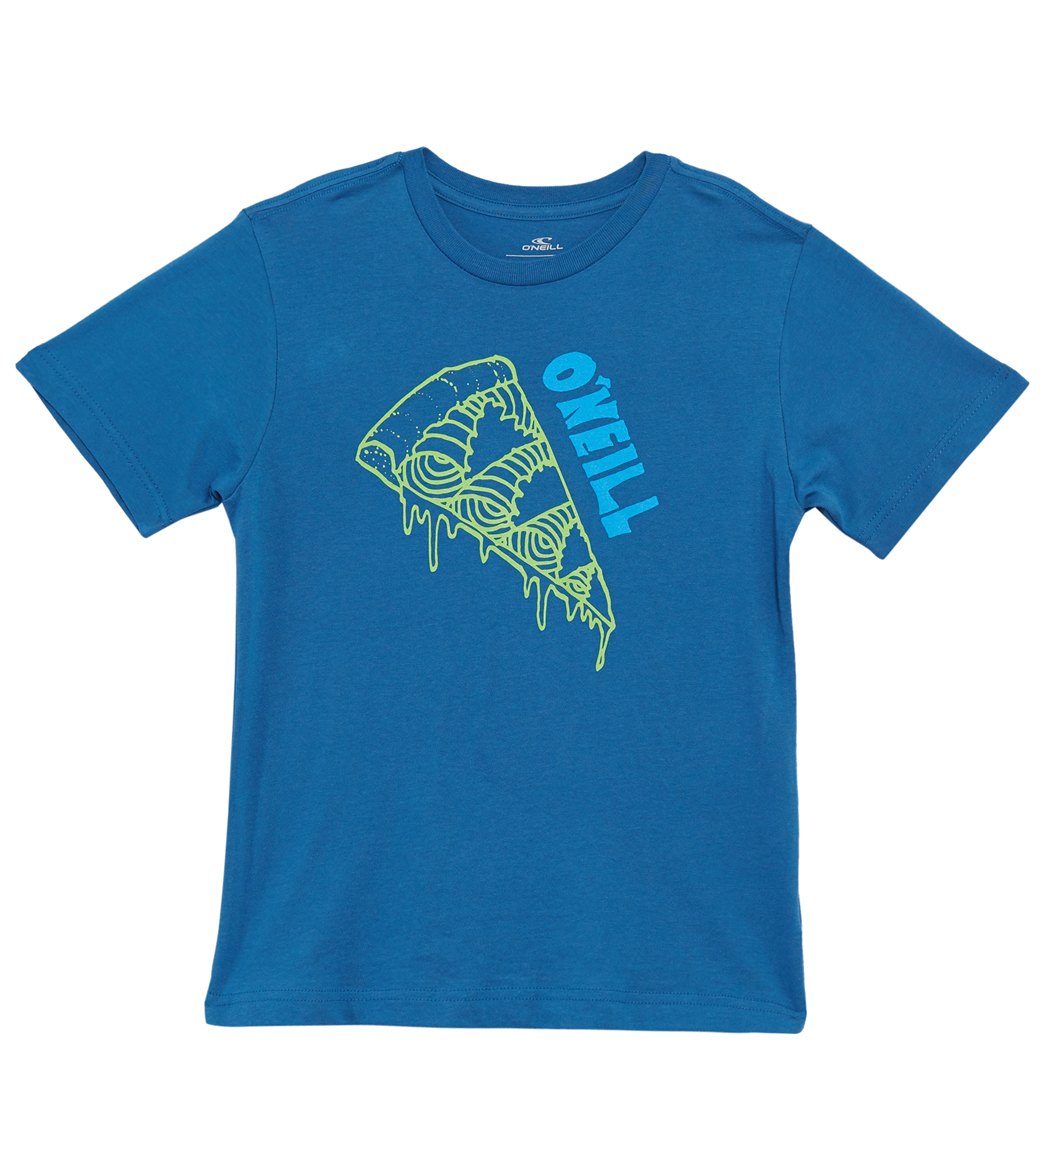 O'neill Boys' Waves & Pizza Tee Shirt Toddler/Little/Big Kid - Dark Blue Medium Big Cotton - Swimoutlet.com